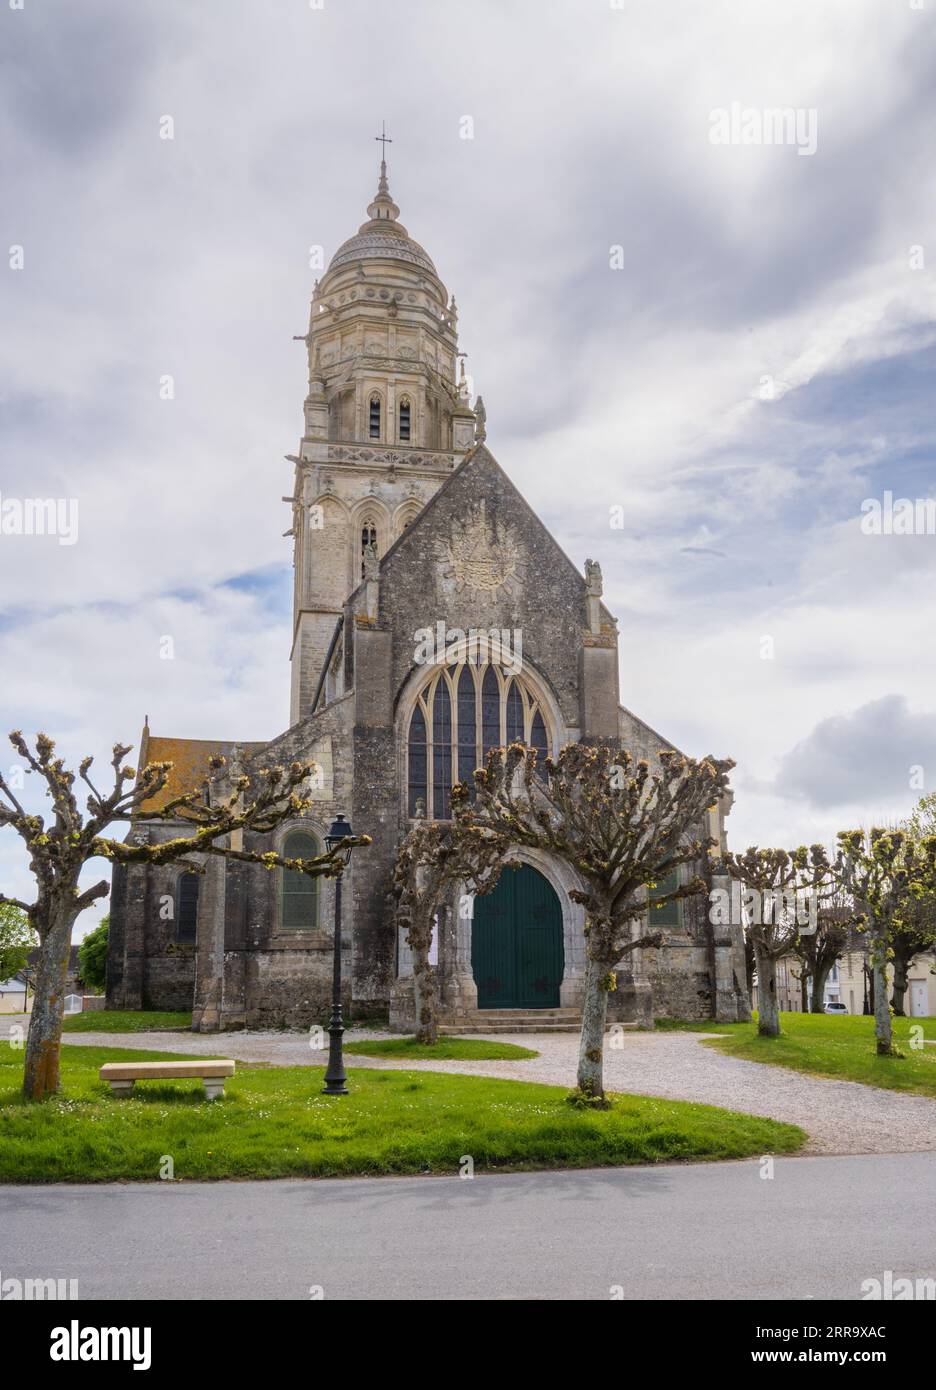 The Église Notre-Dame de Sainte-Marie-du-Mont, Catholic Church in France Stock Photo